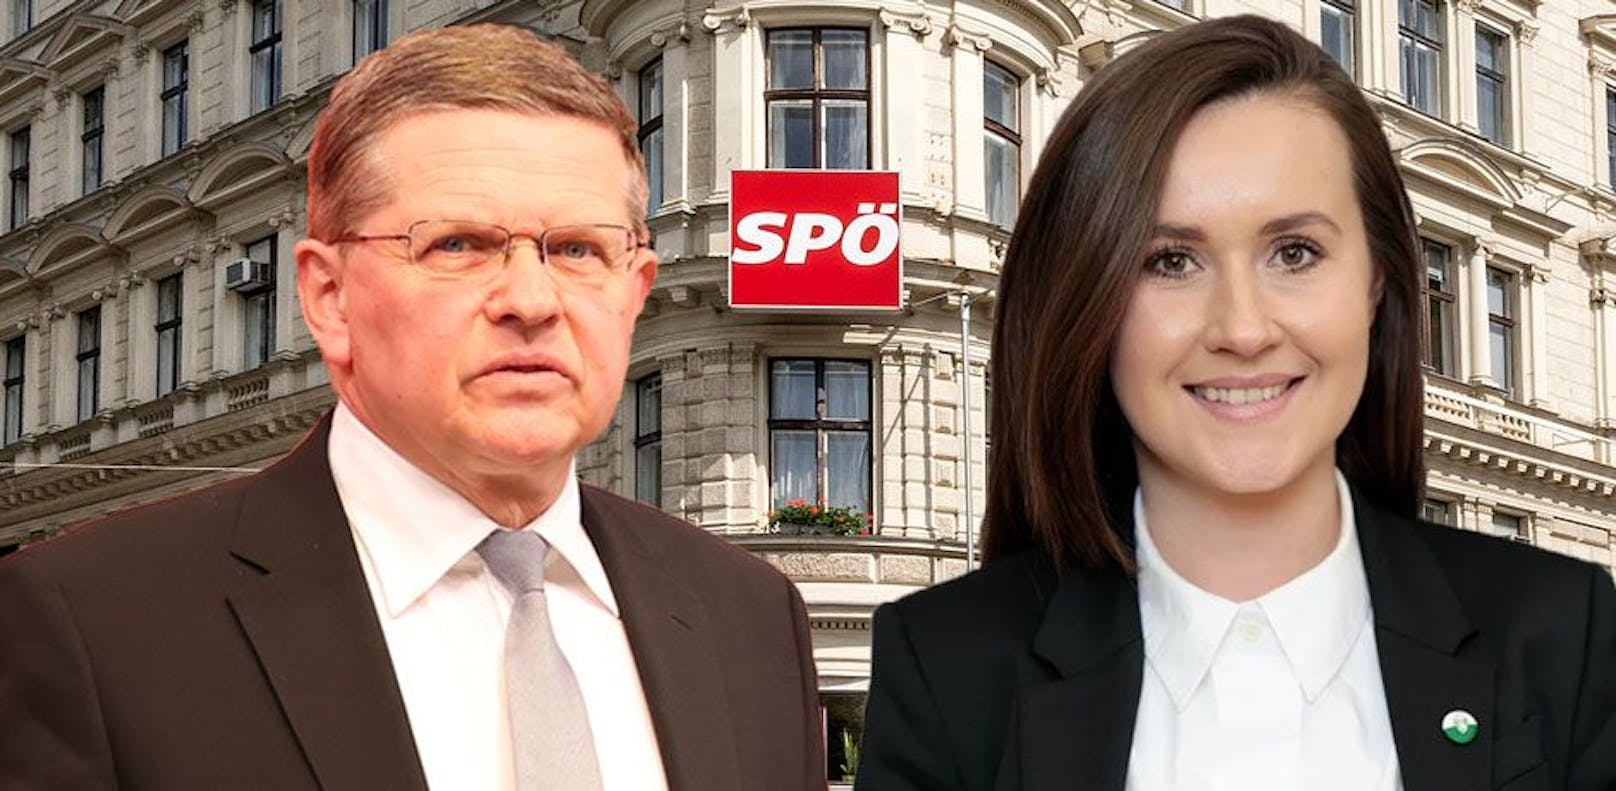 Jetzt neuer Streit um Auswertung der SPÖ-Wahl entbrannt